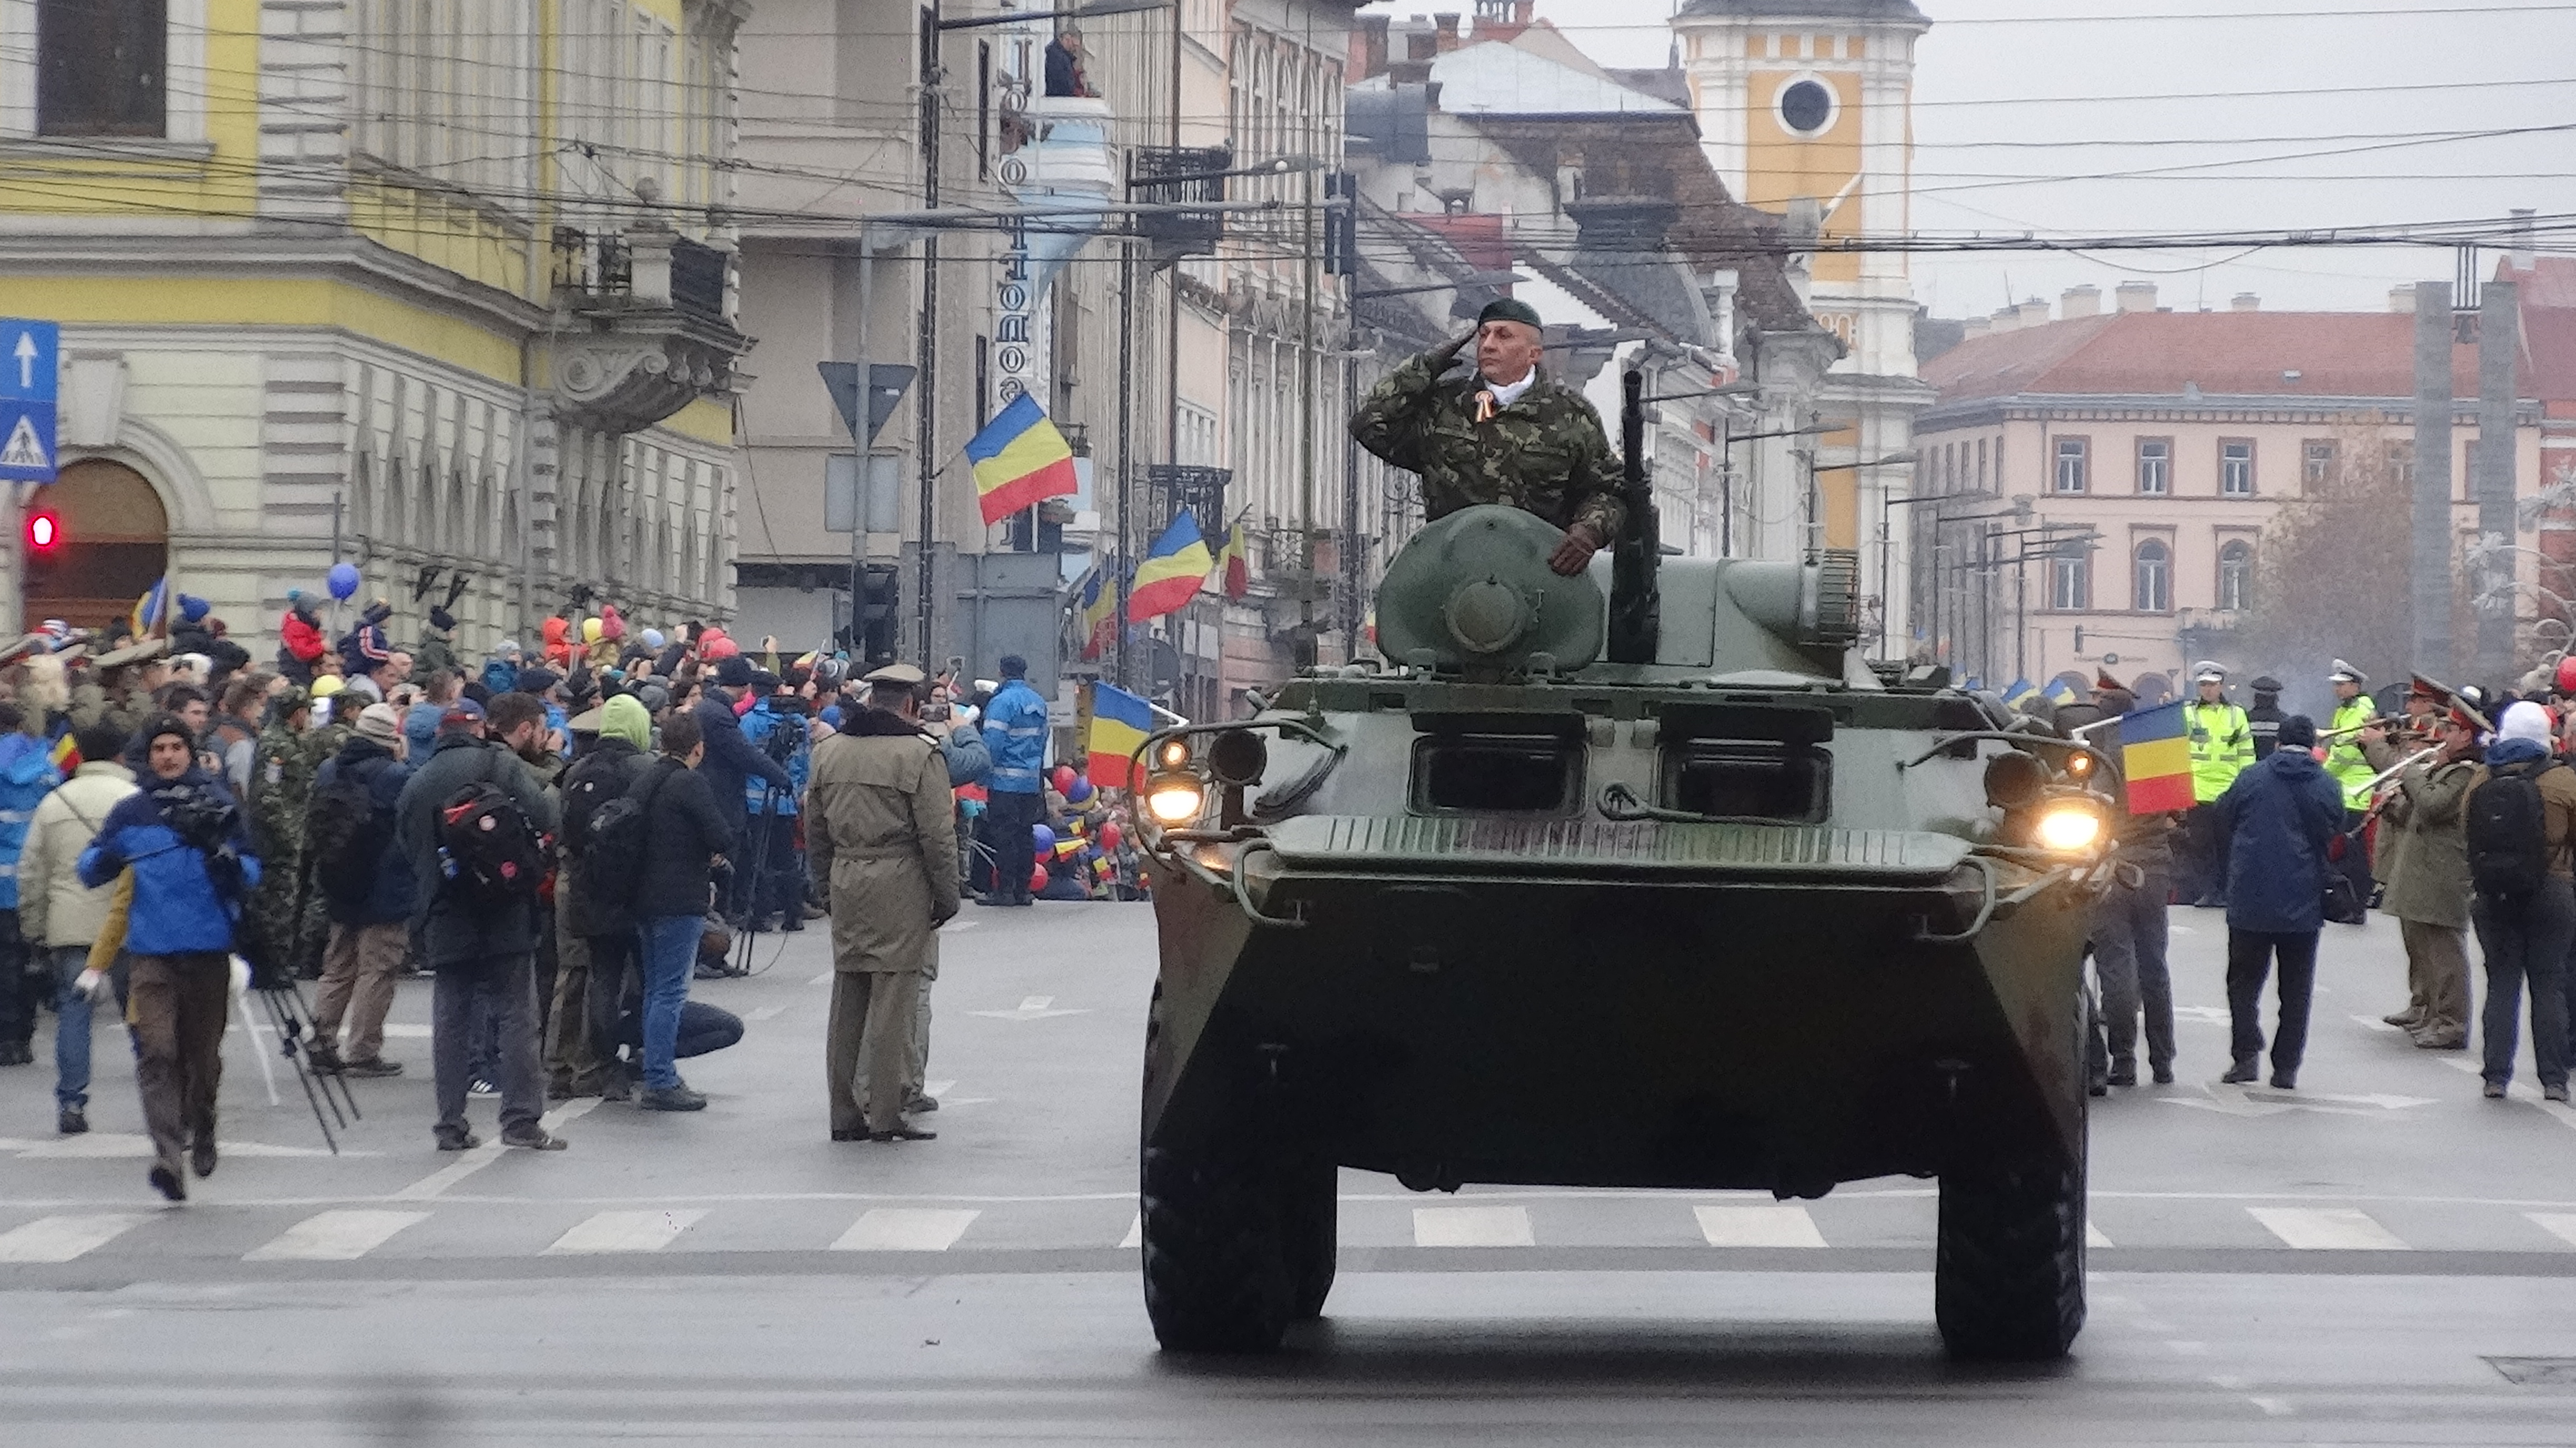 Clujul a sărbătorit Ziua Naţională a României! Protest tăcut al societăţii civile împotriva Guvernului! FOTO-VIDEO